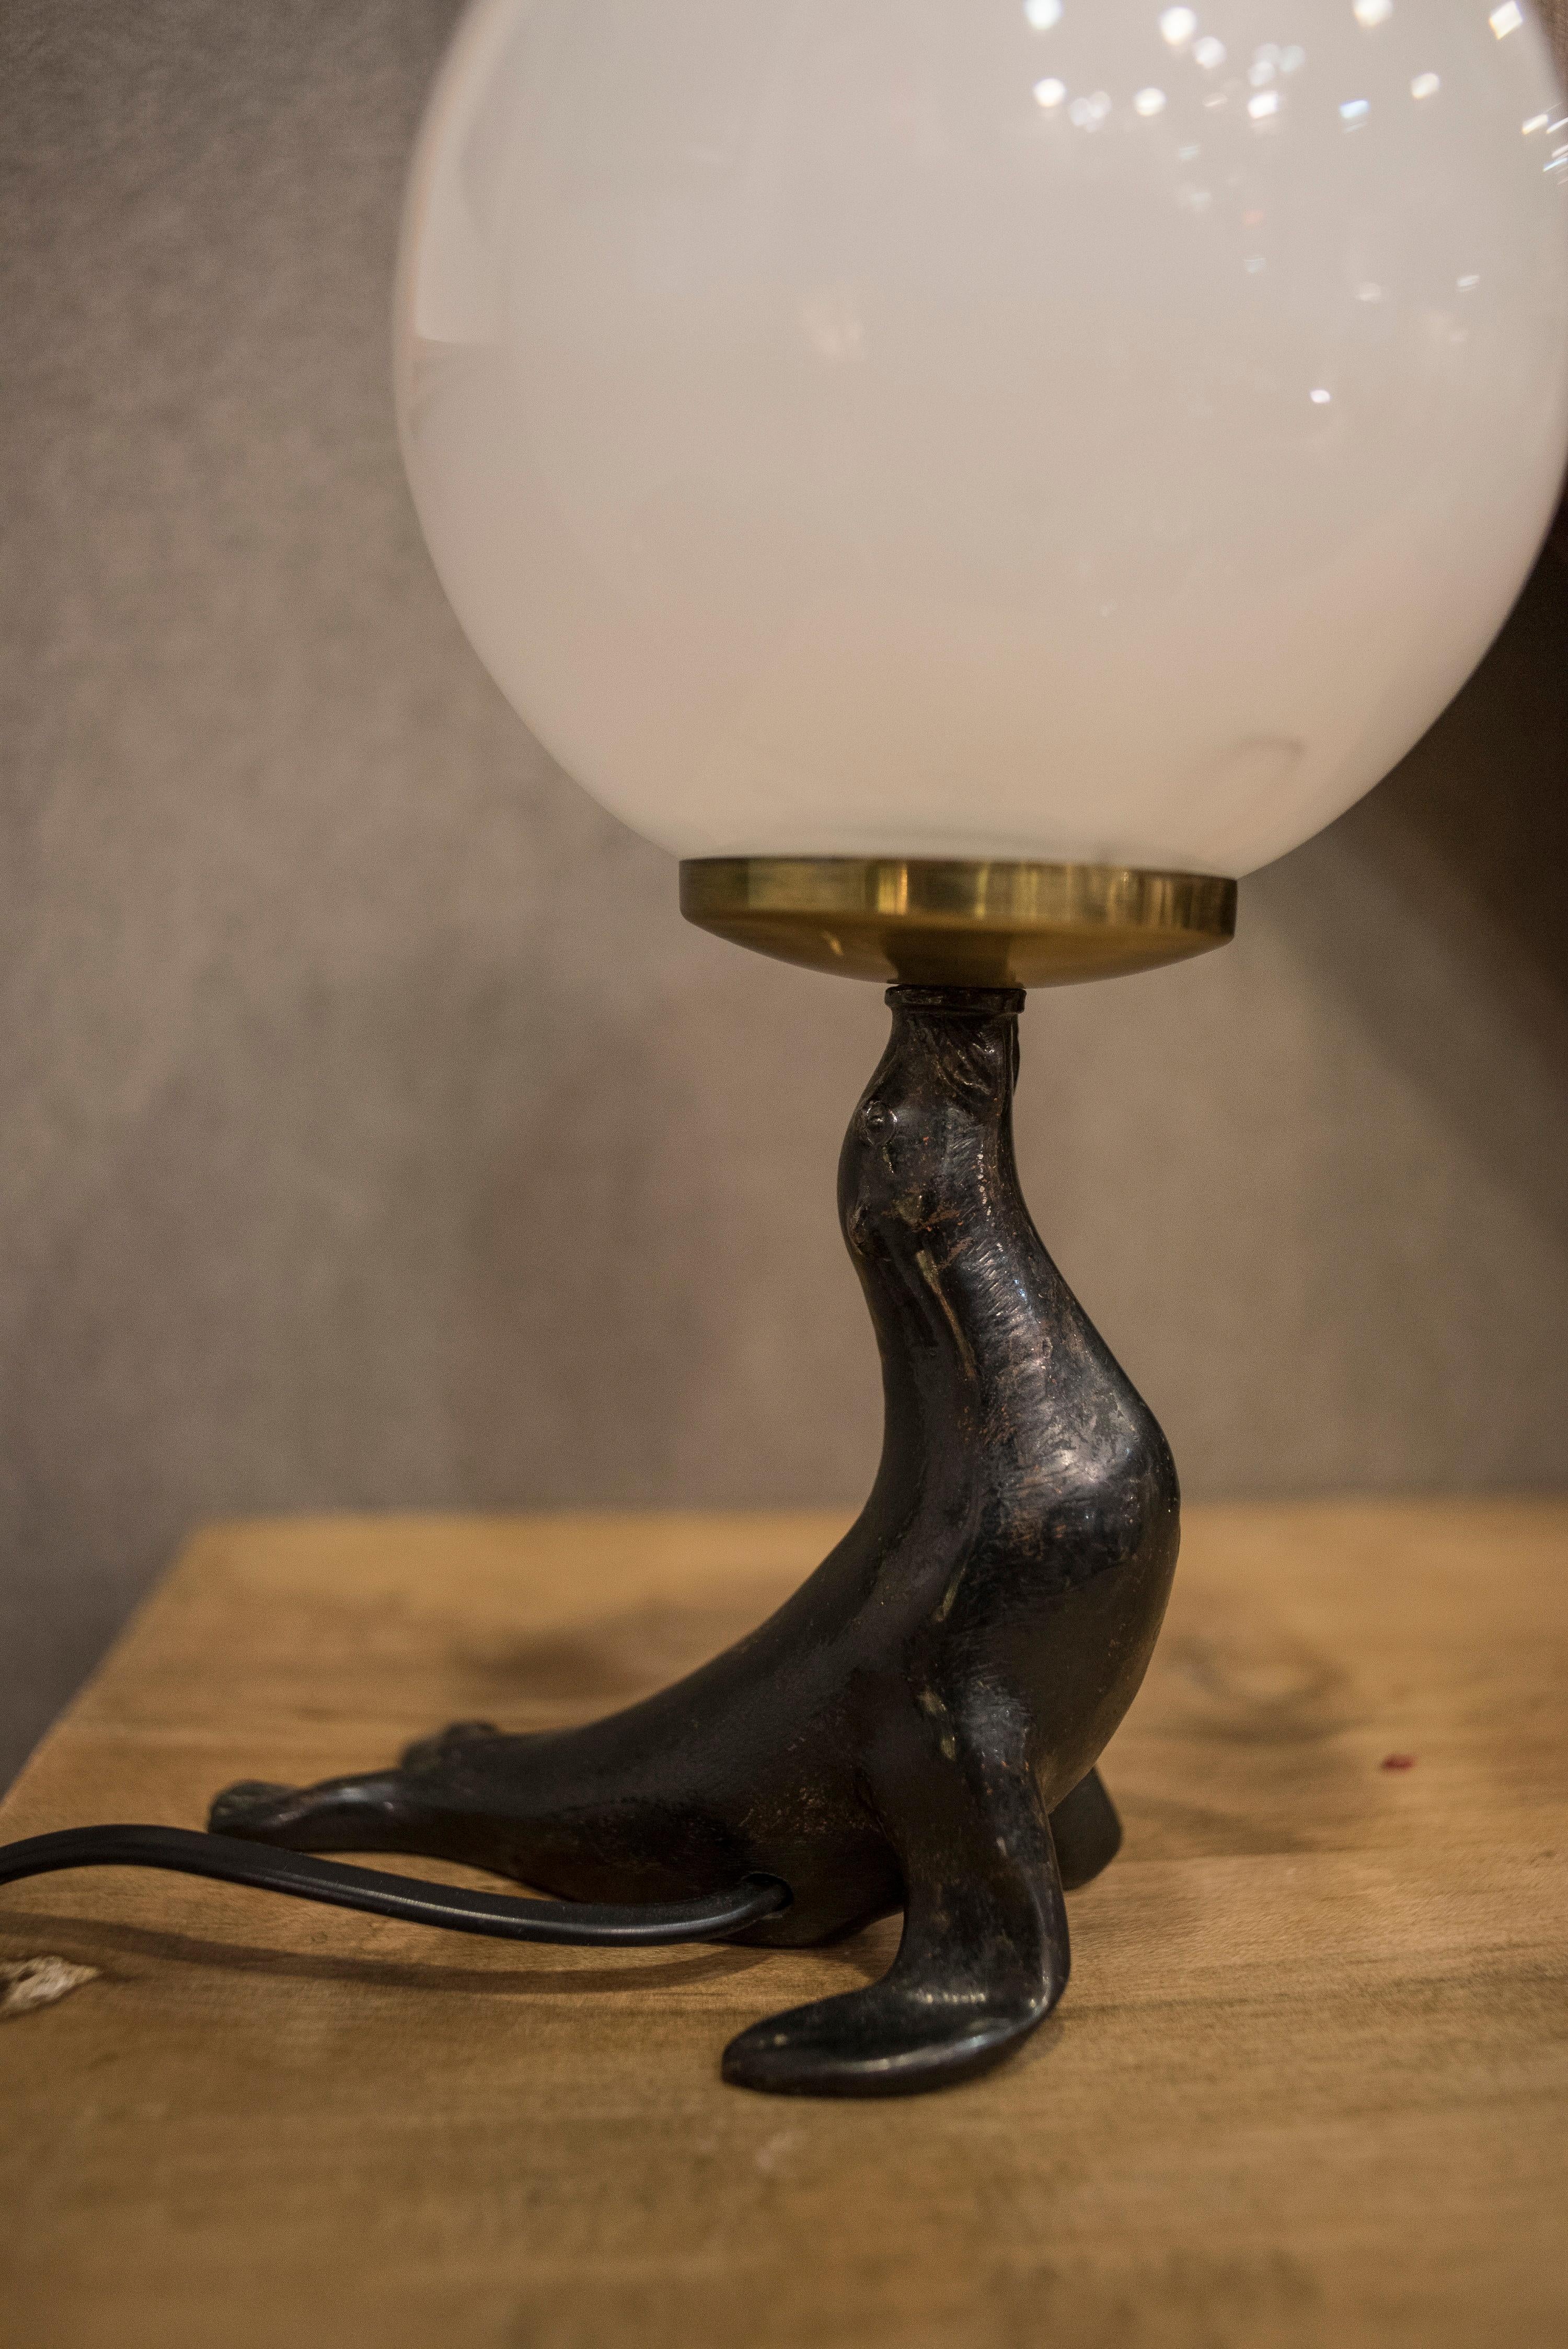 lamp seal